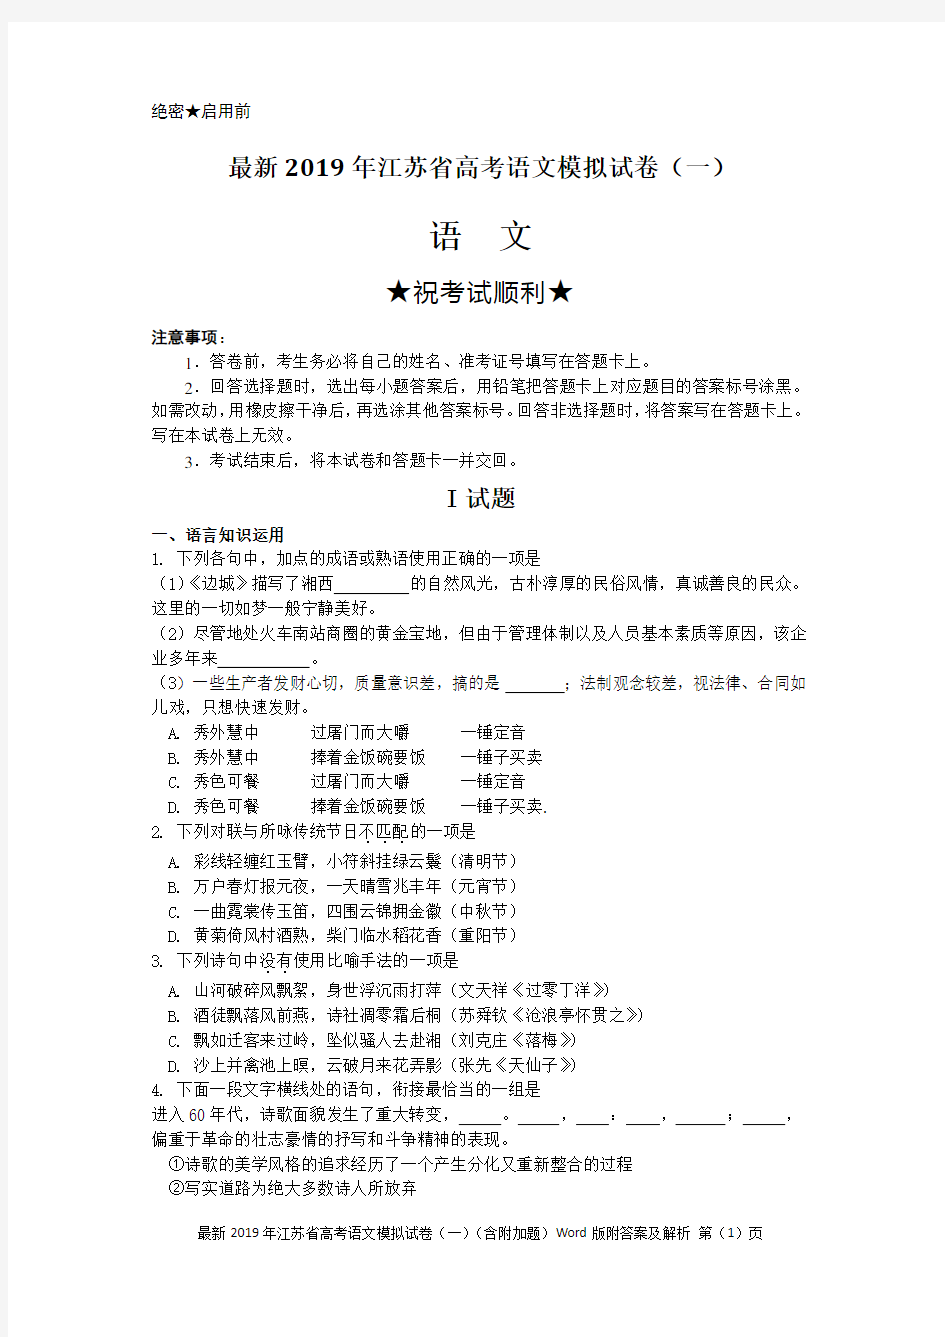 最新2019年江苏省高考语文模拟试卷(一)(含附加题)Word版附答案及解析